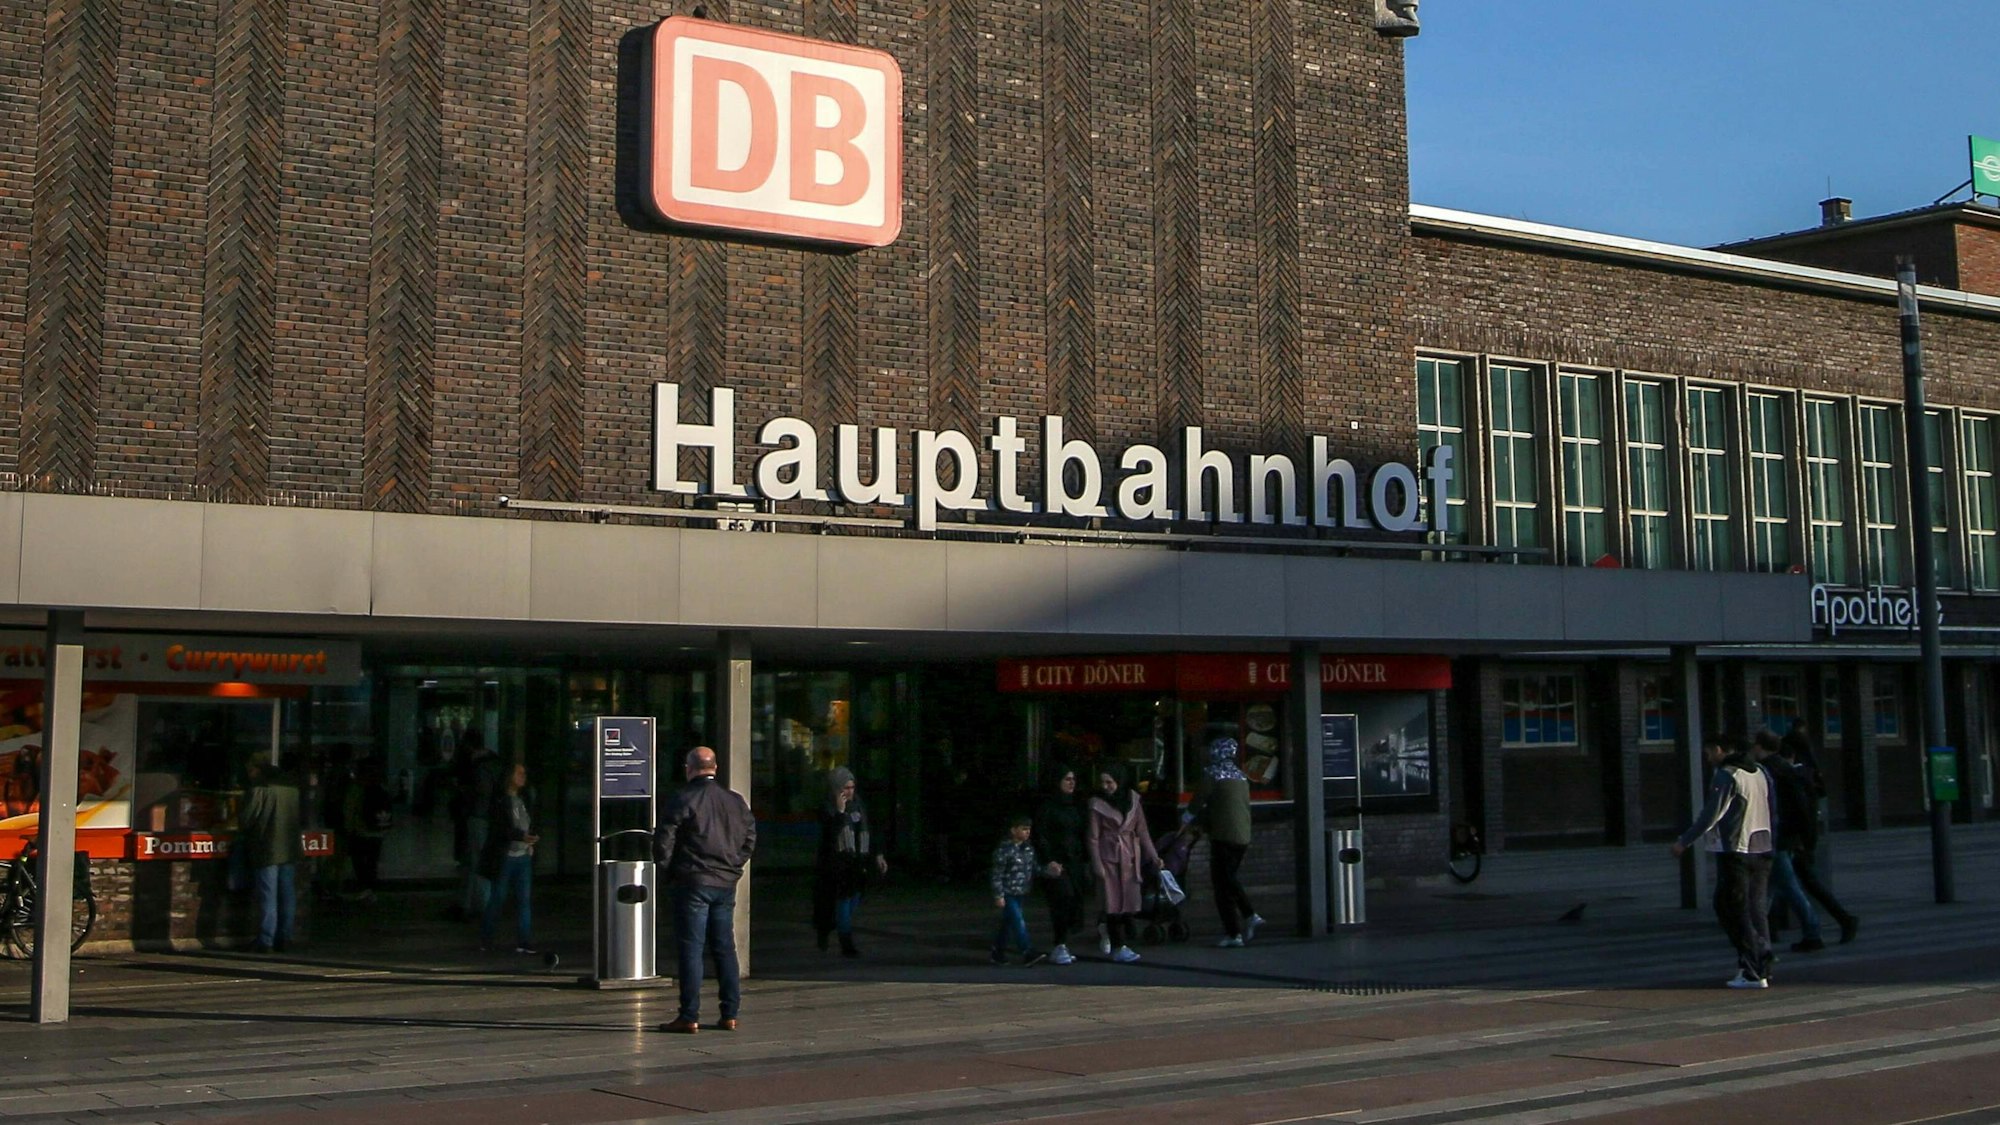 Ein Mitarbeiter der DB überraschte kürzlich mit einer humorvollen Durchsage über den Duisburger Hauptbahnhof.